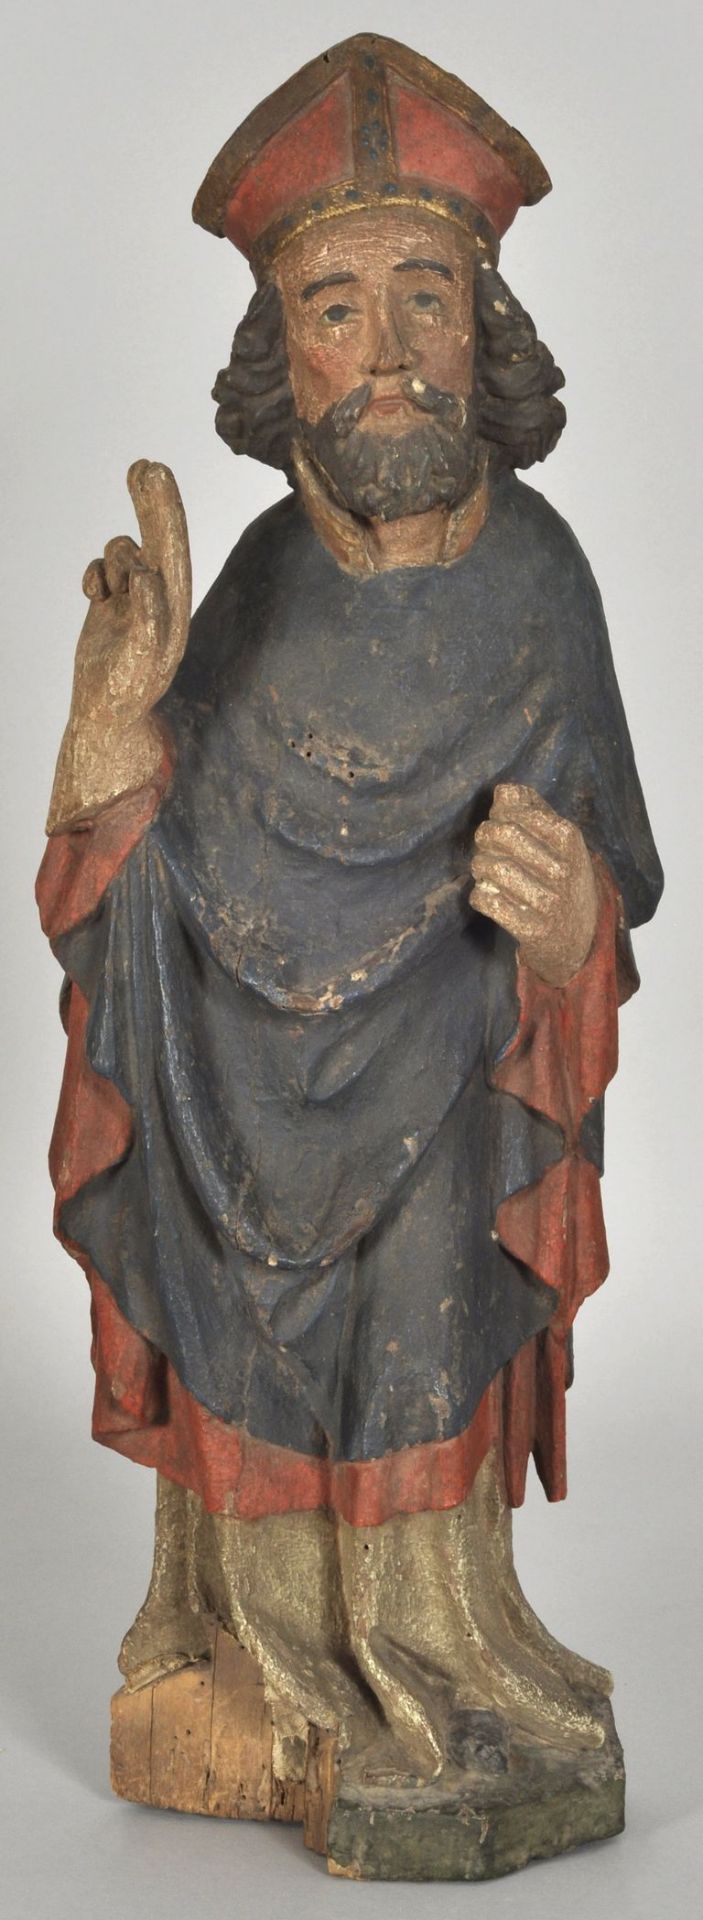 Heiliger Bischof, segnend, Oberlausitz/Böhmen, fr. 15. Jh.Laubholz, geschnitzt, Rückseite